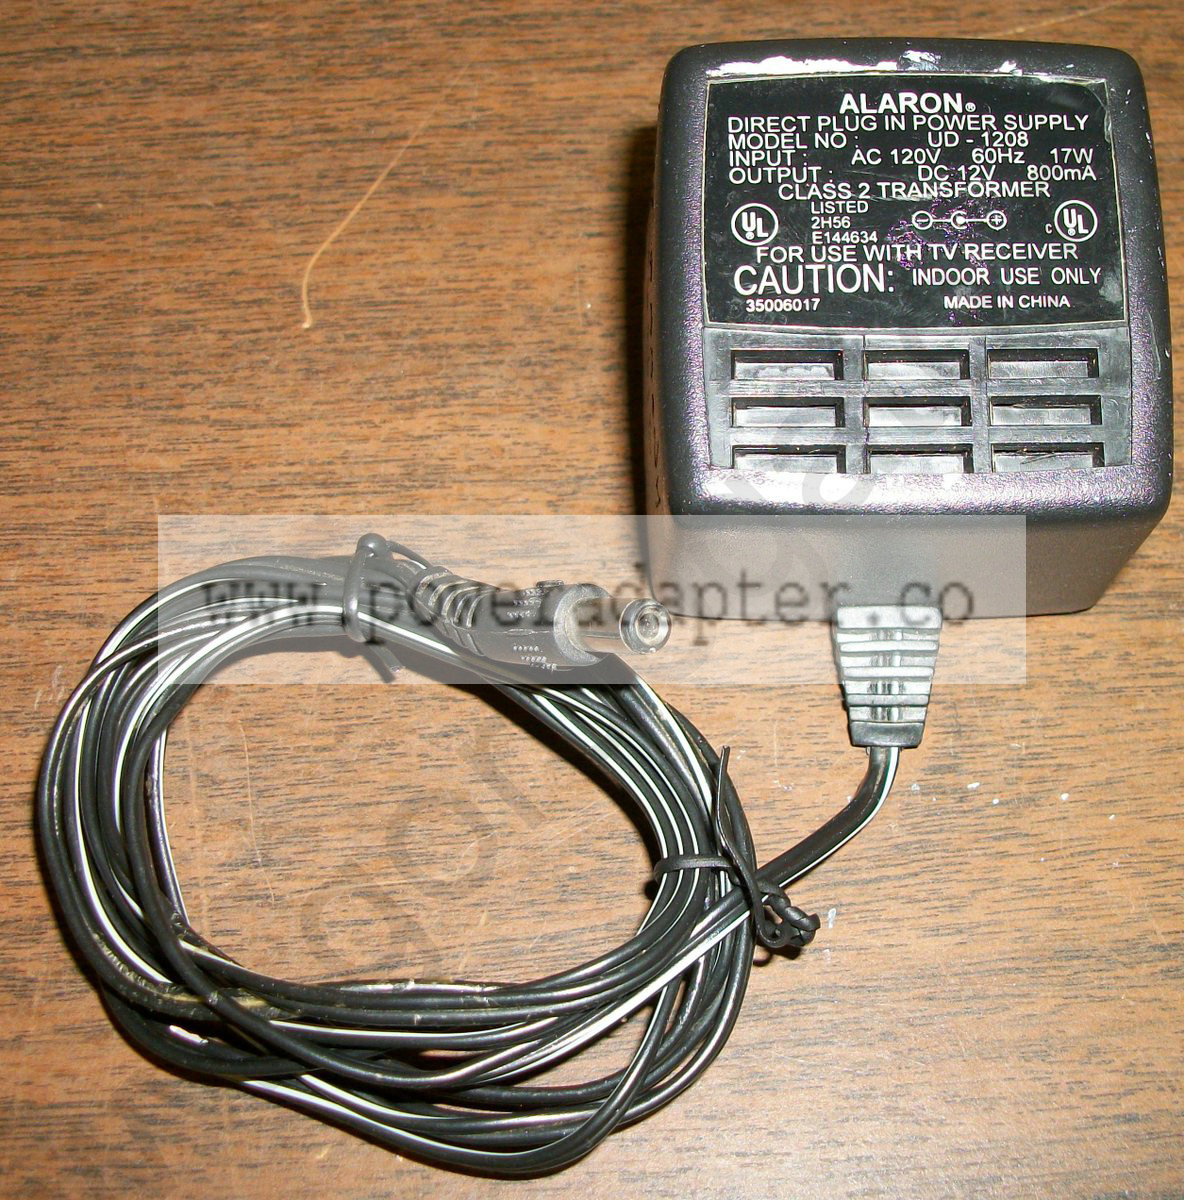 Alaron TV Receiver AC Adapter UD-1208 DC 12V [UD-1208] Input: AC 120V 60Hz 17W, Output: DC 12V 800mA. Model No.: UD- - Click Image to Close